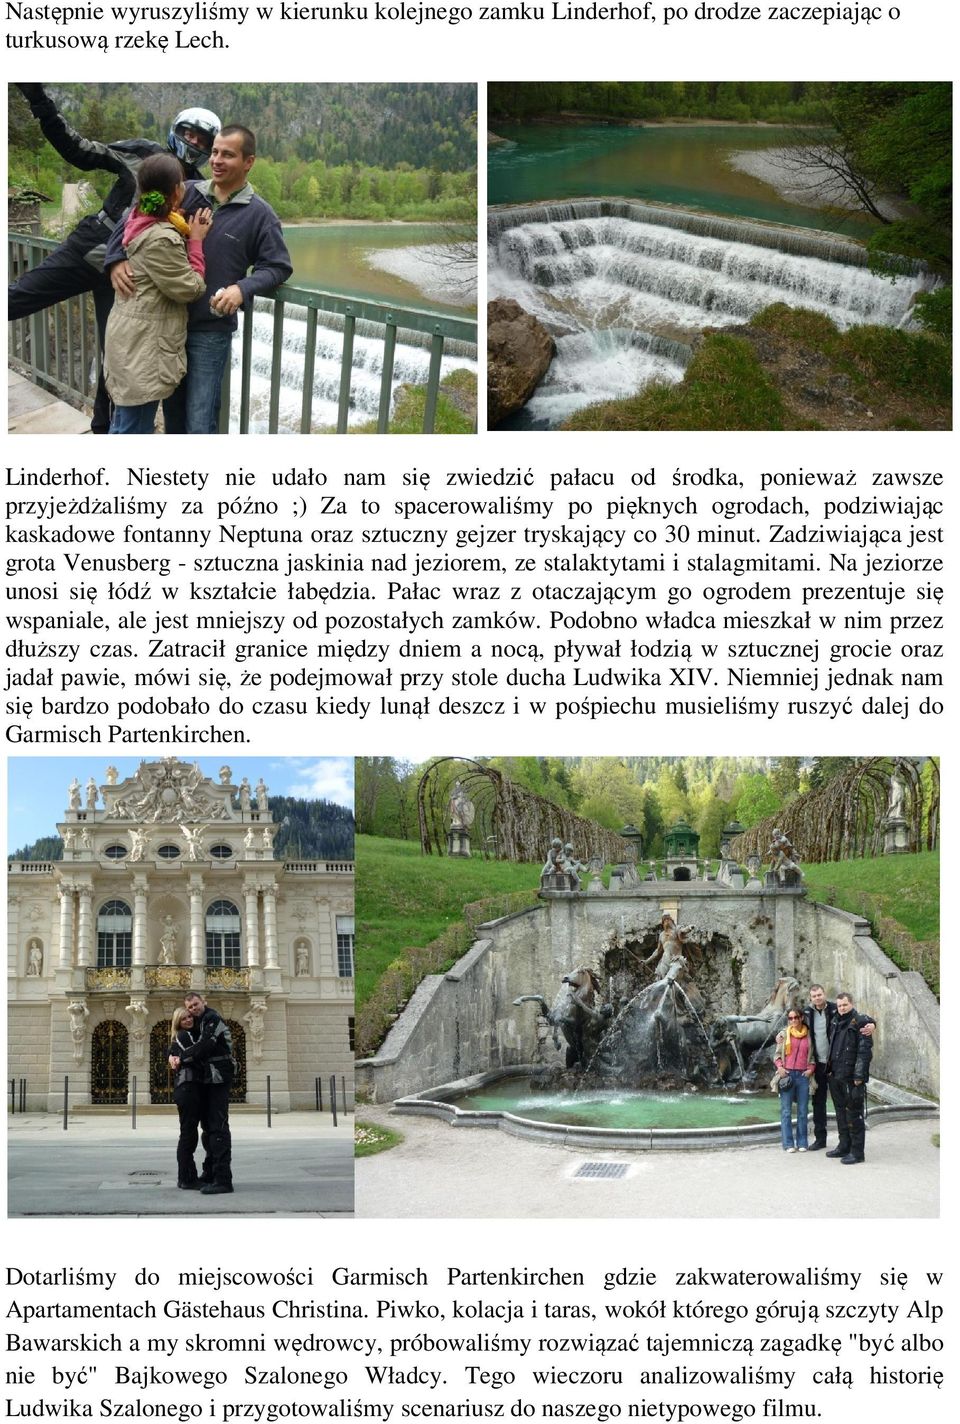 Niestety nie udało nam się zwiedzić pałacu od środka, ponieważ zawsze przyjeżdżaliśmy za późno ;) Za to spacerowaliśmy po pięknych ogrodach, podziwiając kaskadowe fontanny Neptuna oraz sztuczny